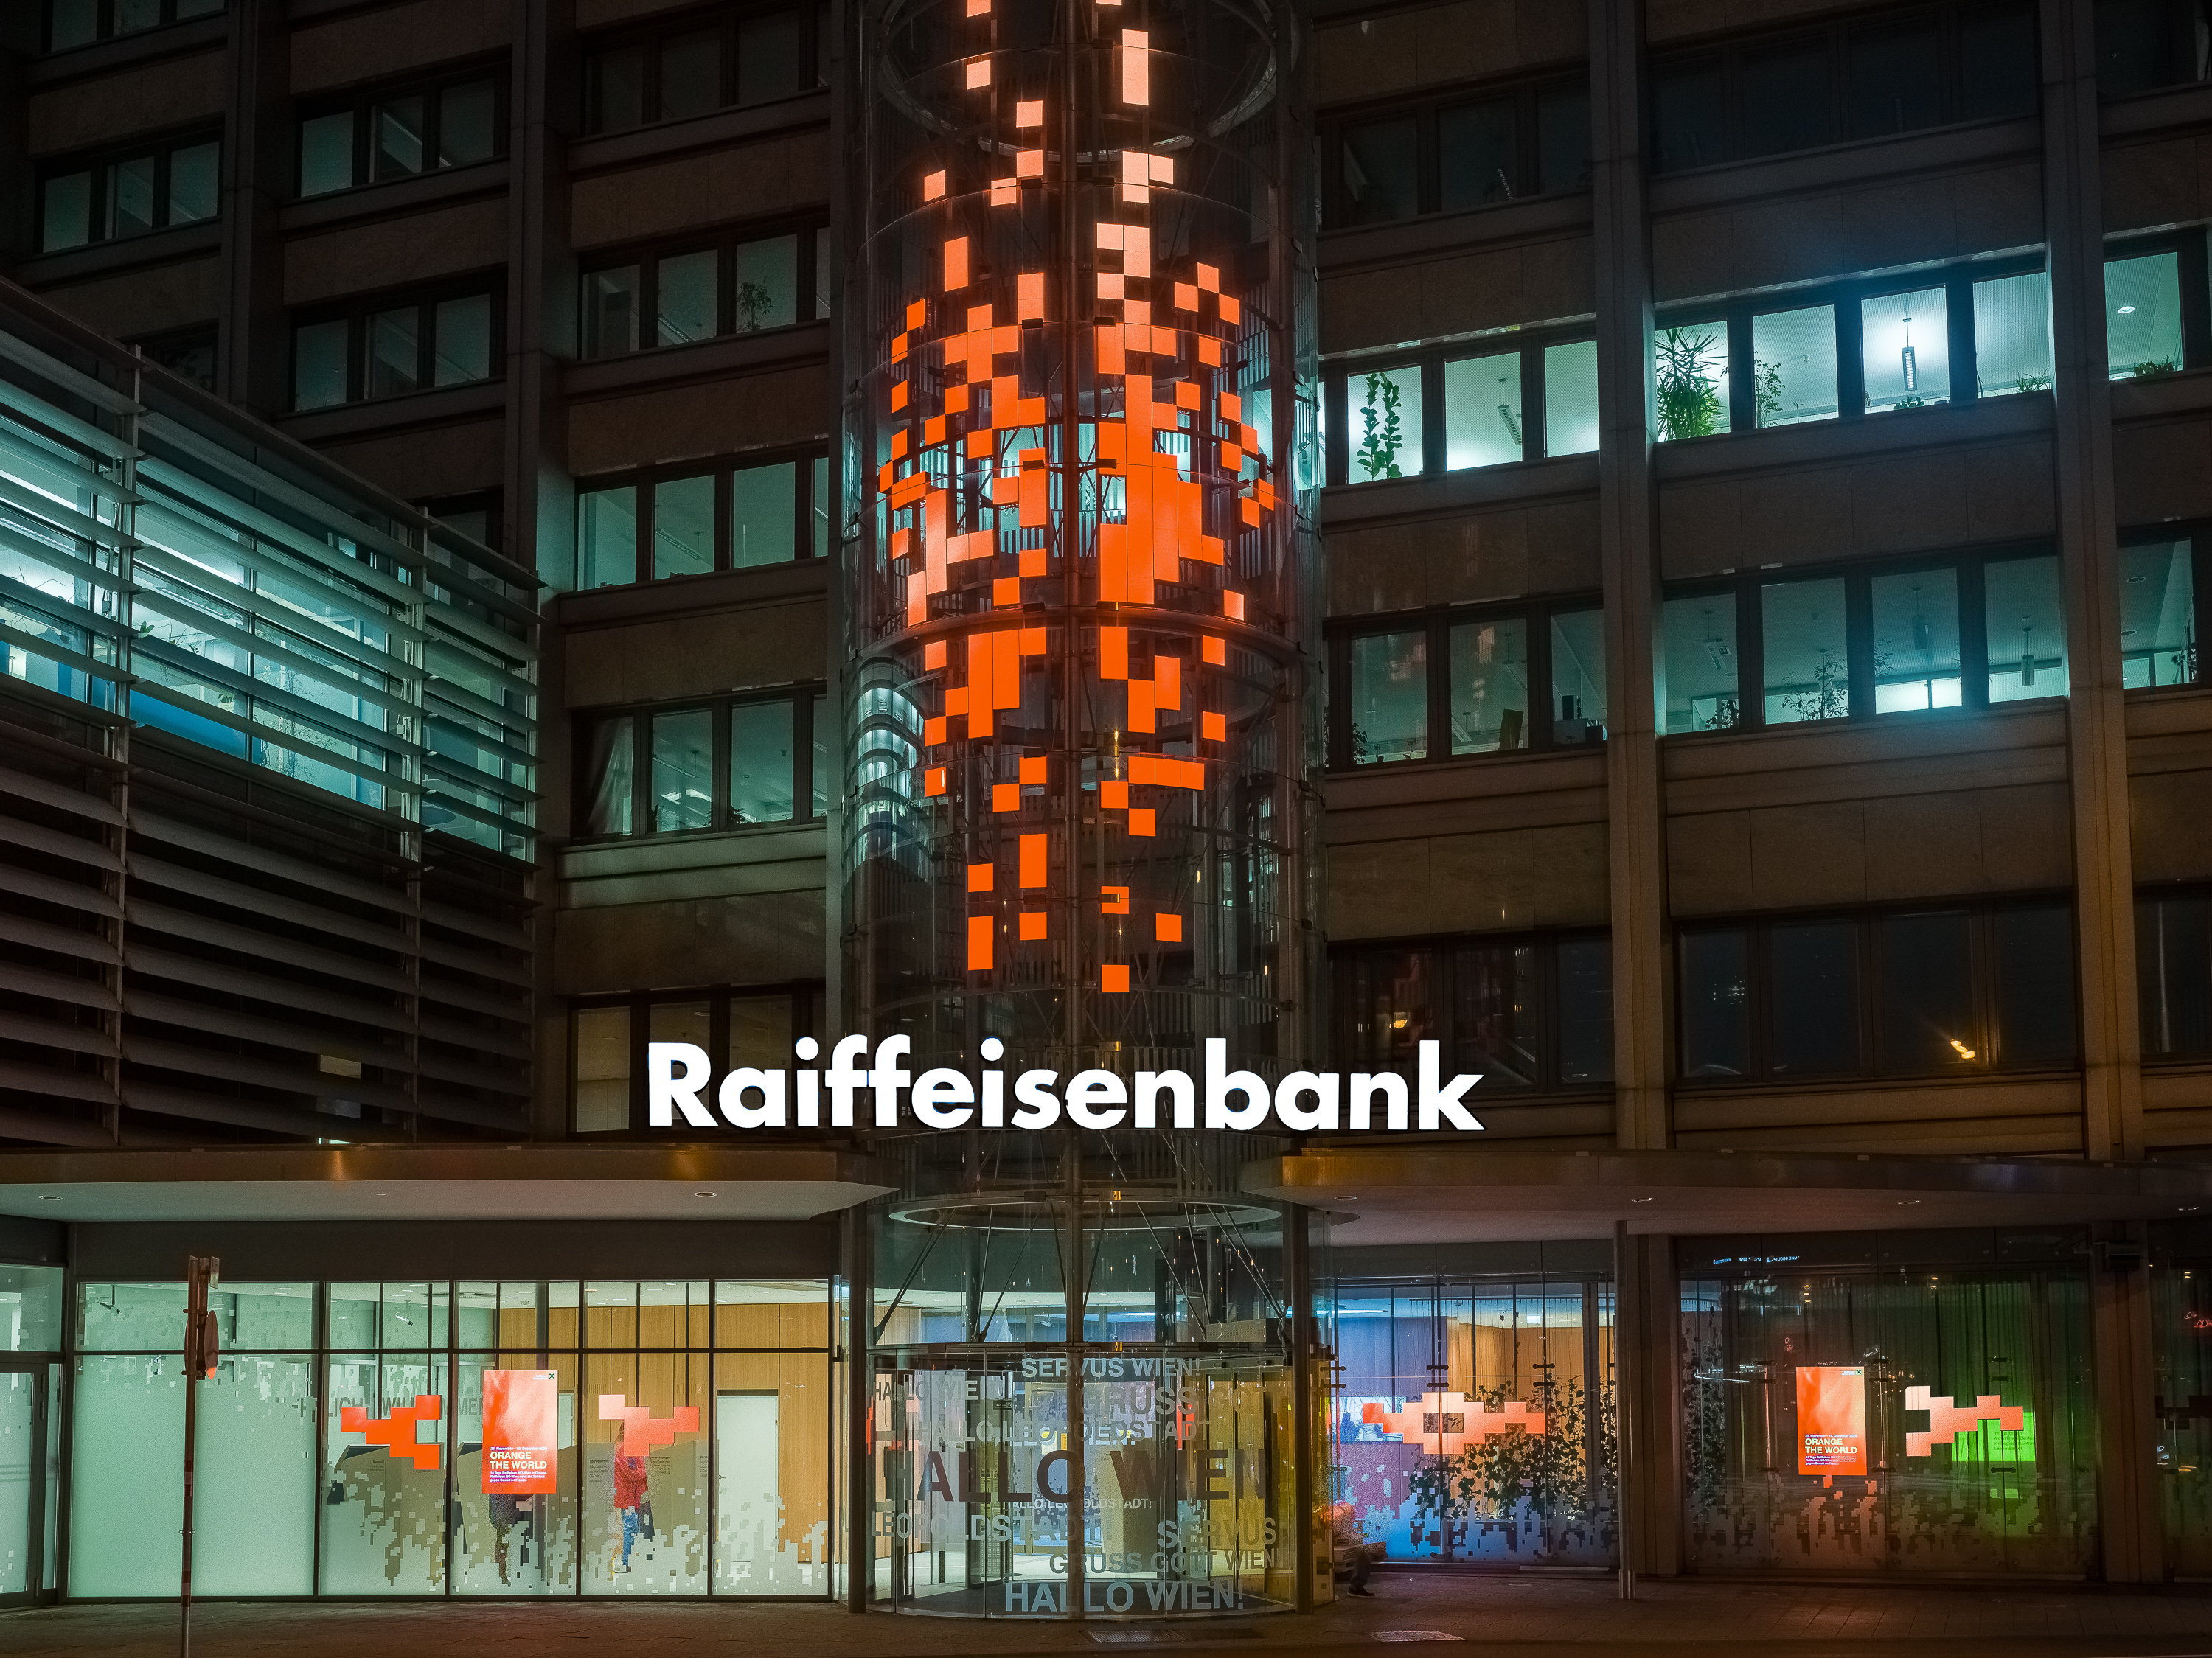 Leuchtende Vierecke in der Farbe Orange, mit Schriftzug Raiffeisenbank